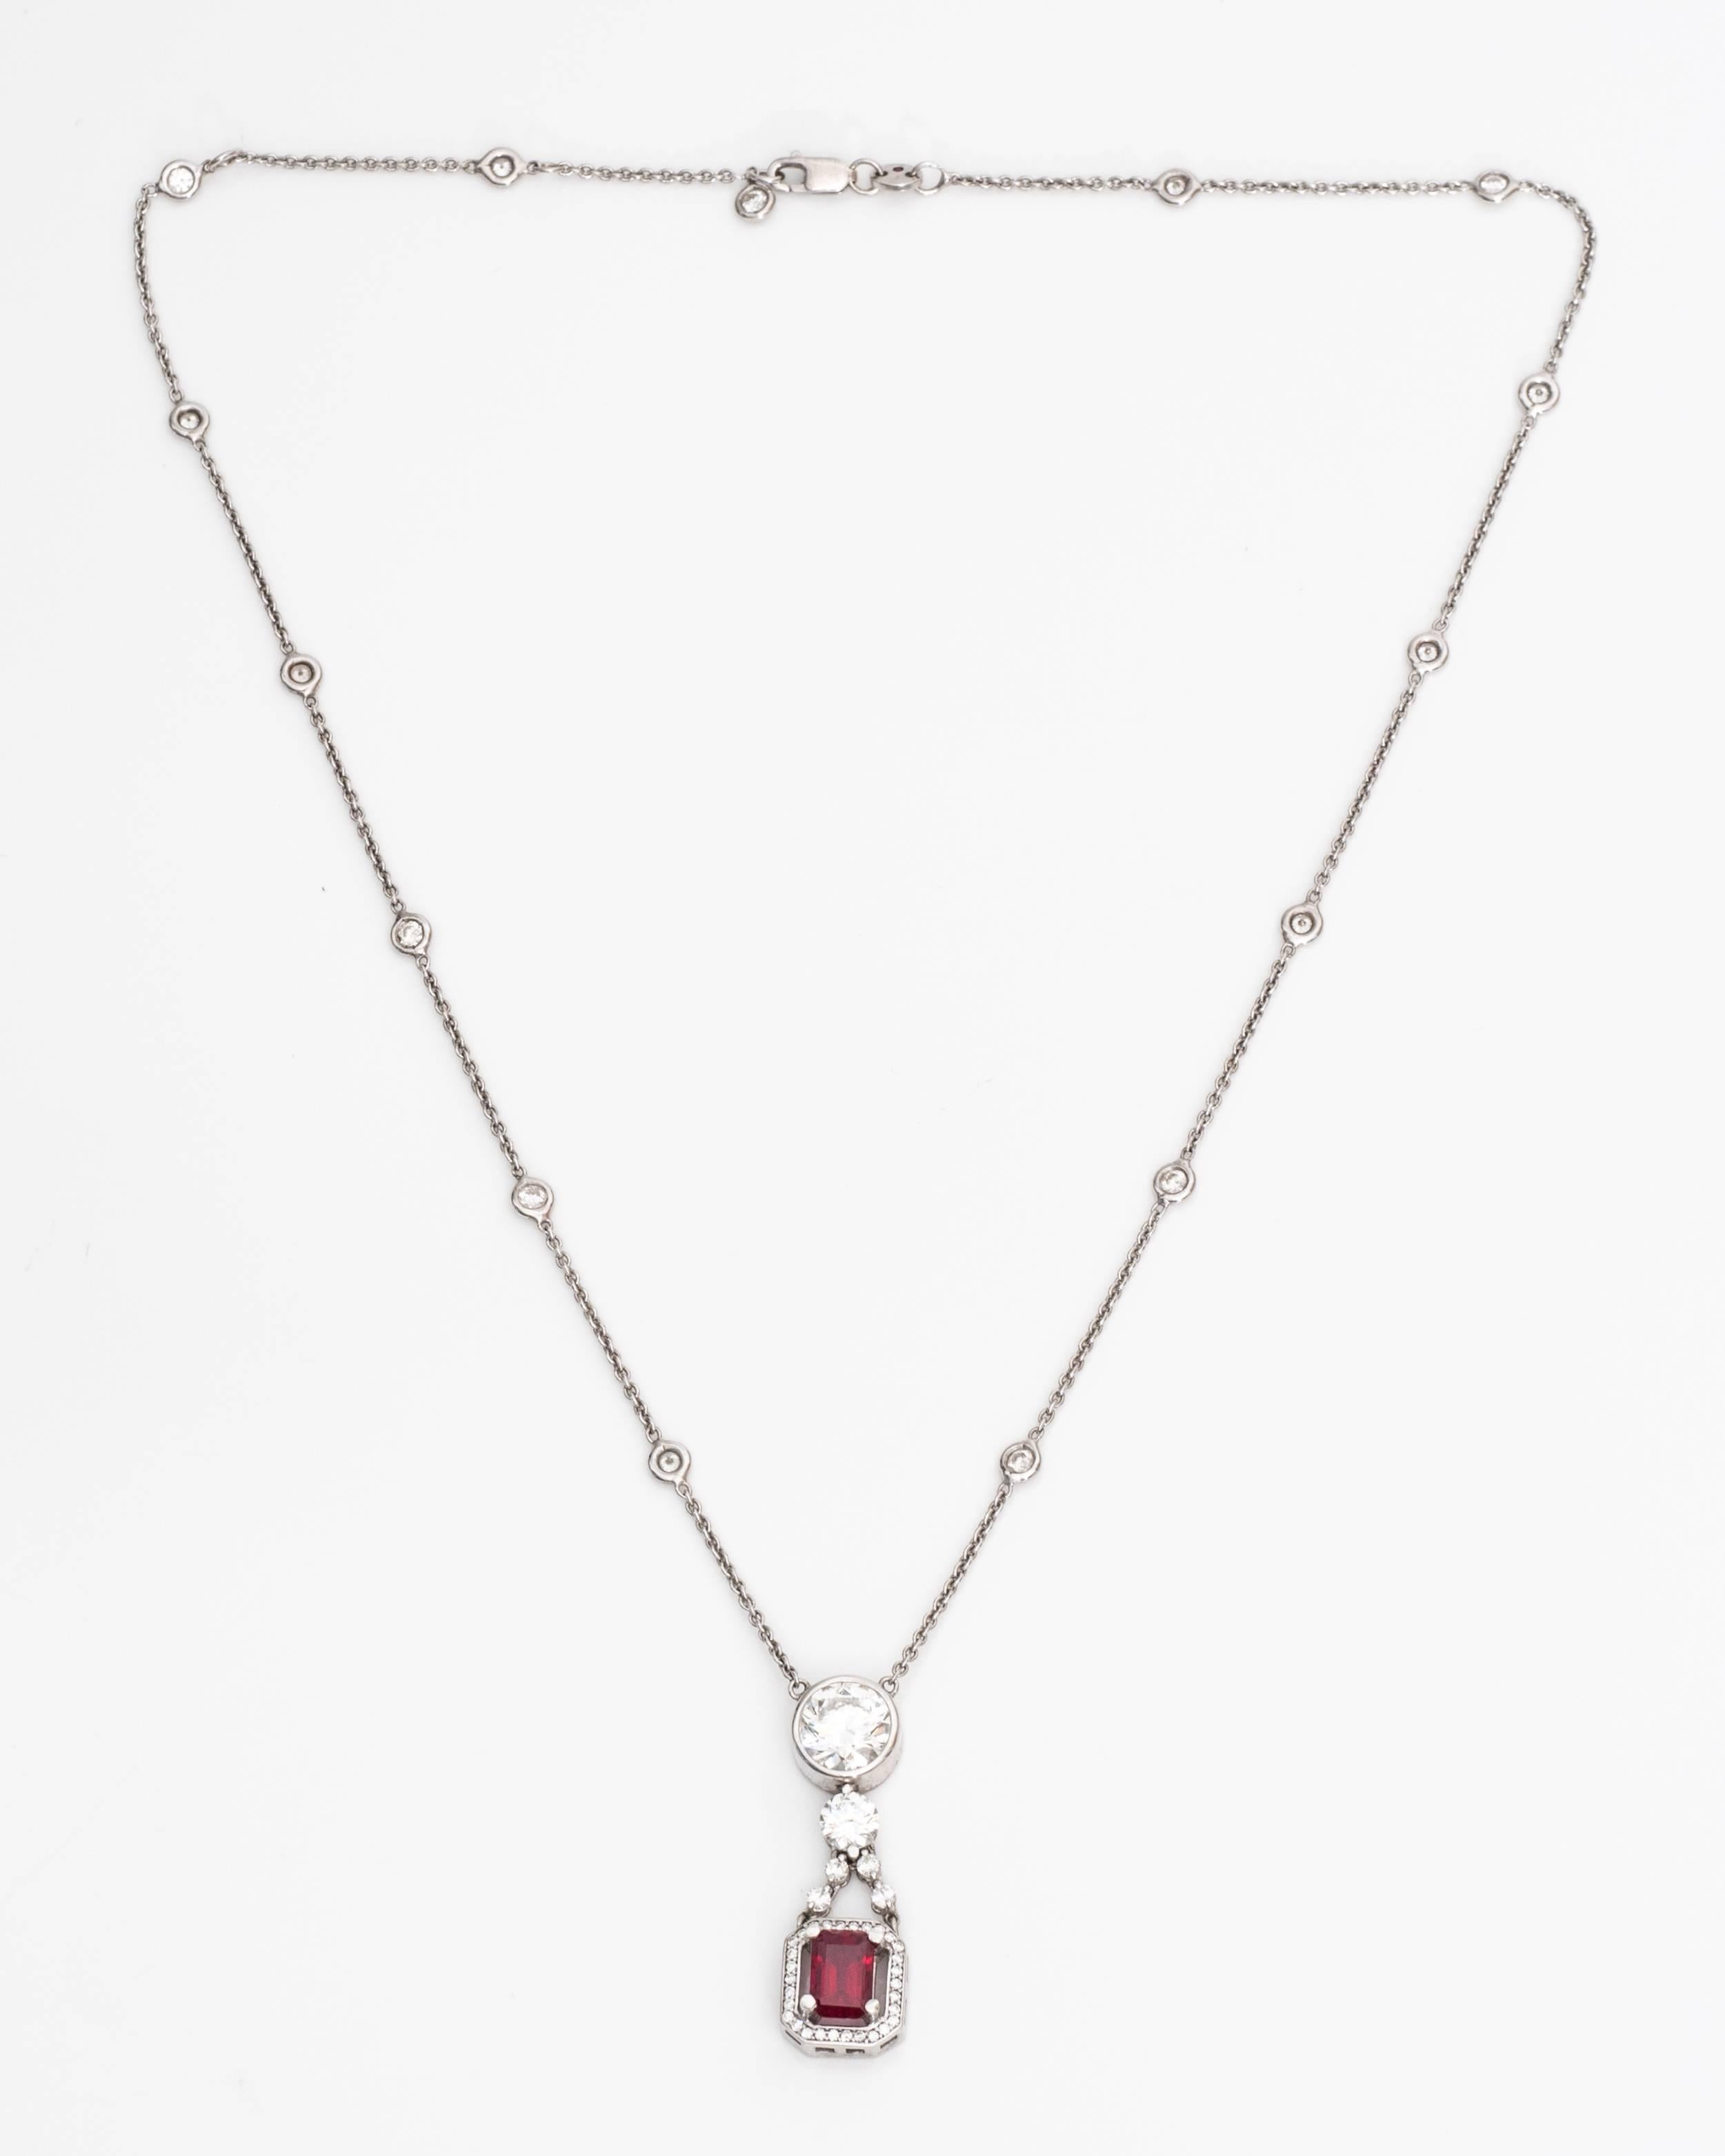 collier en or blanc 18 carats avec rubis et diamants

Chaîne Roberto Coin 